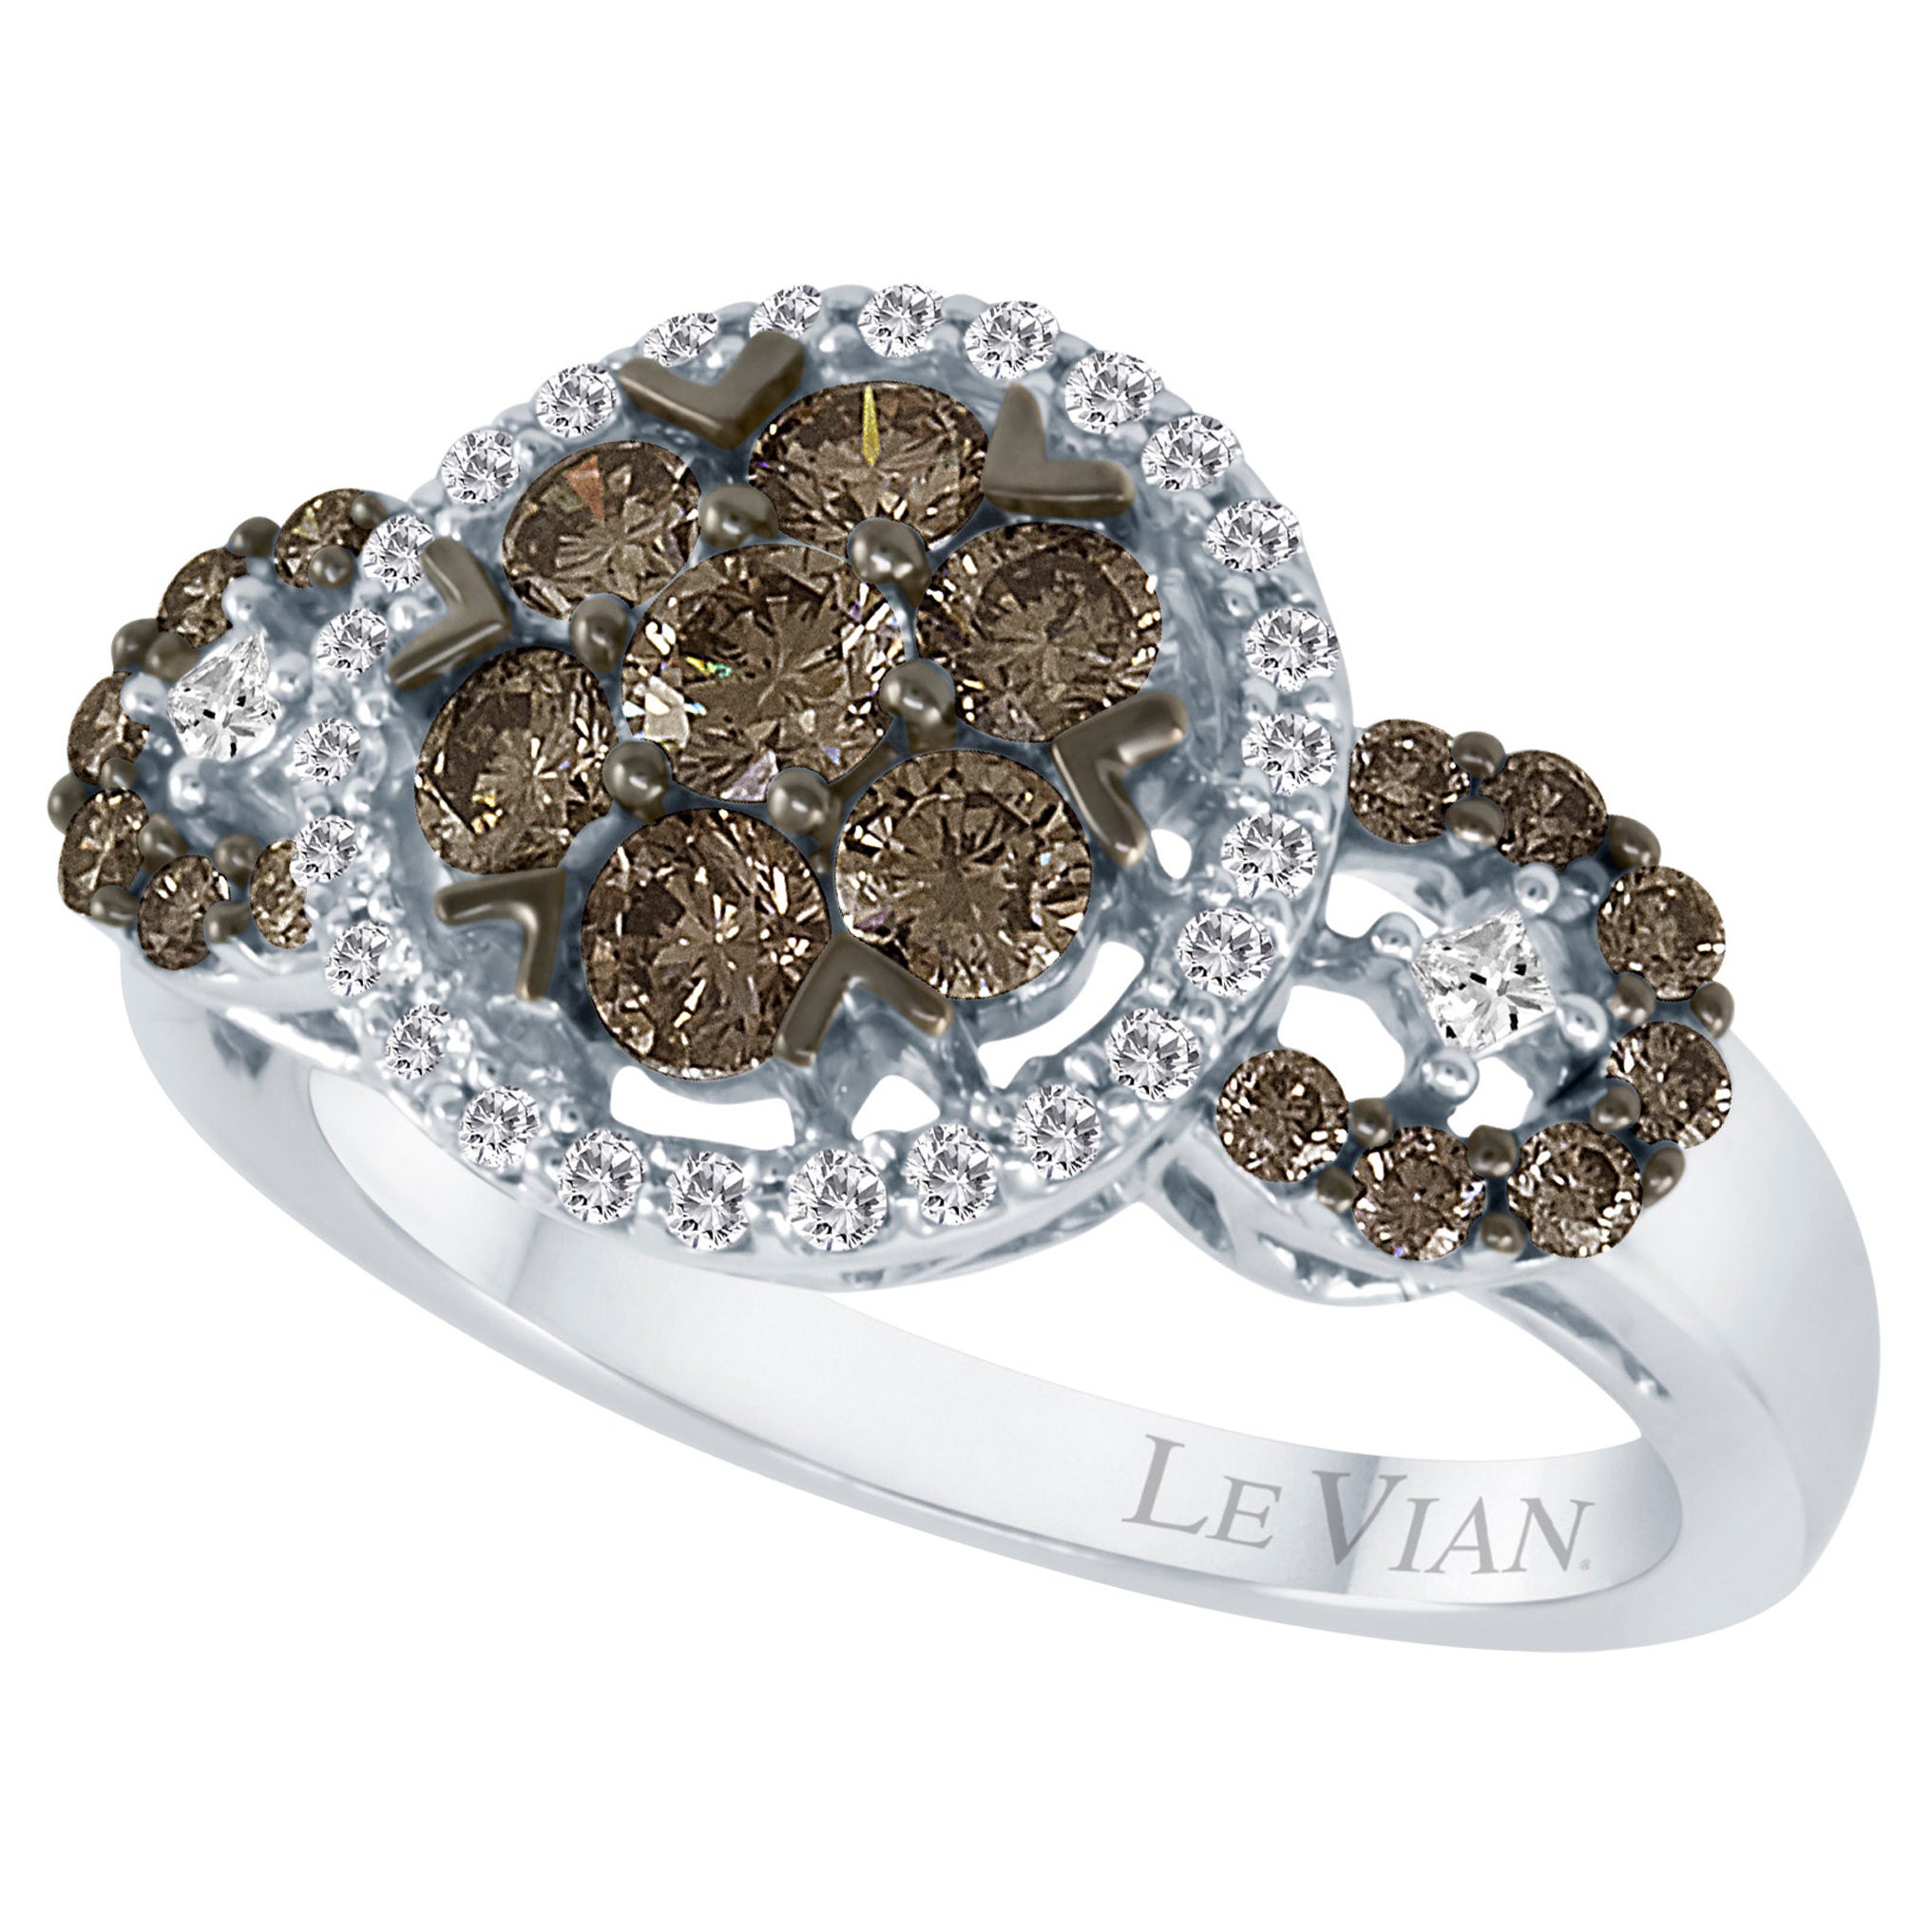 Magnifique et jolie bague LeVian en or blanc 14 carats avec diamants ronds brun chocolat